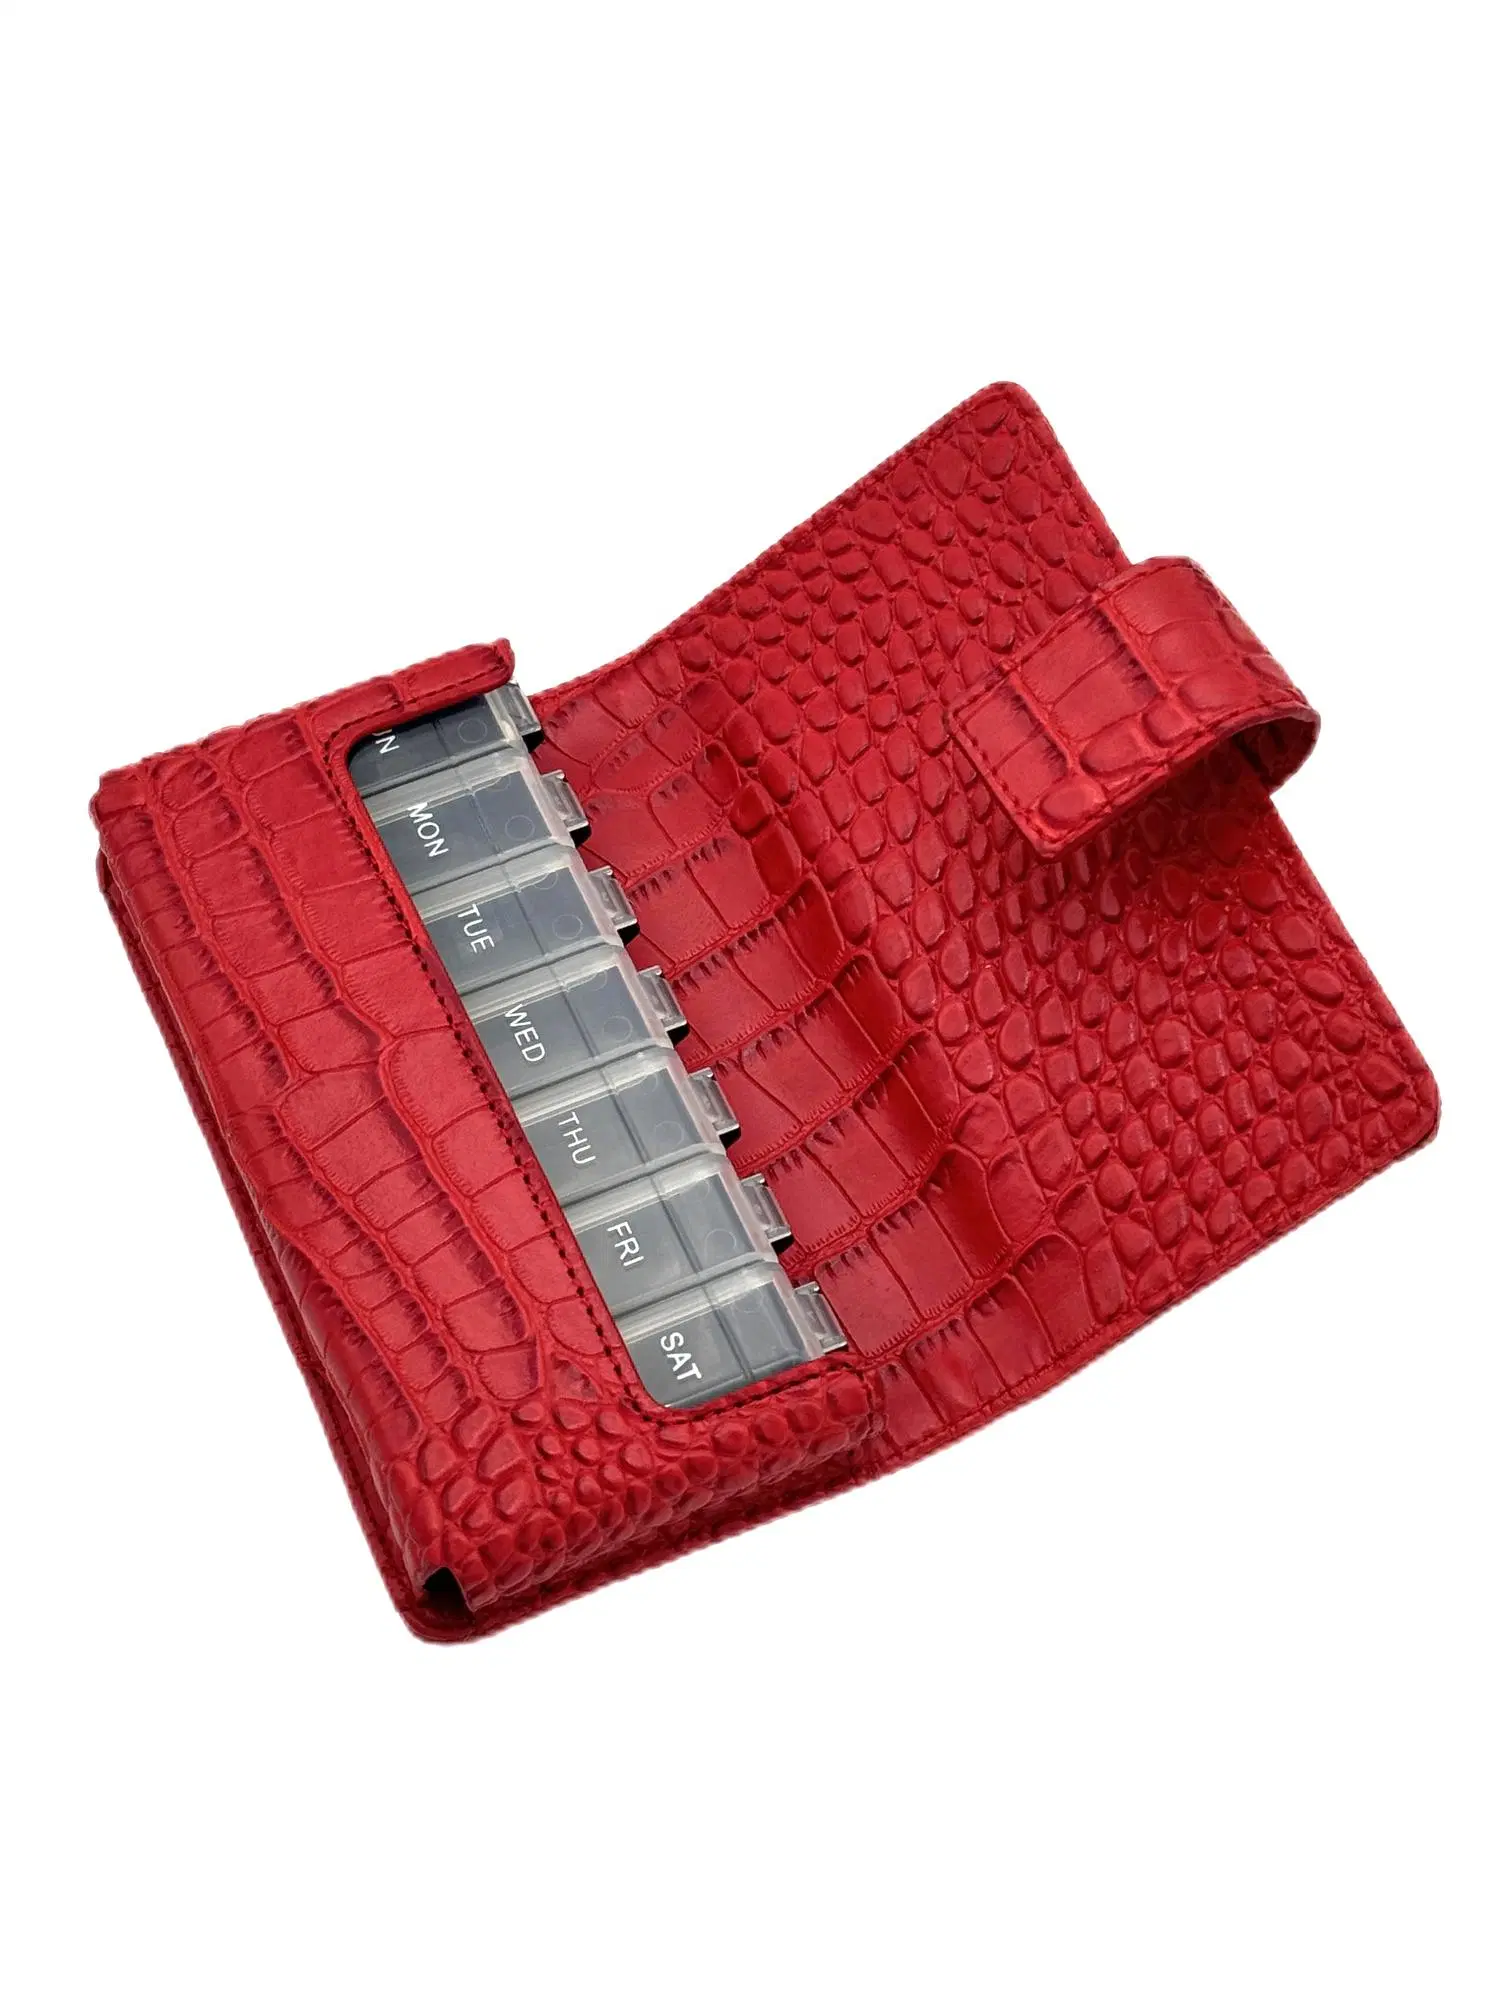 Boîte de distributeur de luxe de 7 jours de Pill Organizer dans le portefeuille hebdomadaire ETUI de voyage pour médicaments avec sac en cuir pu